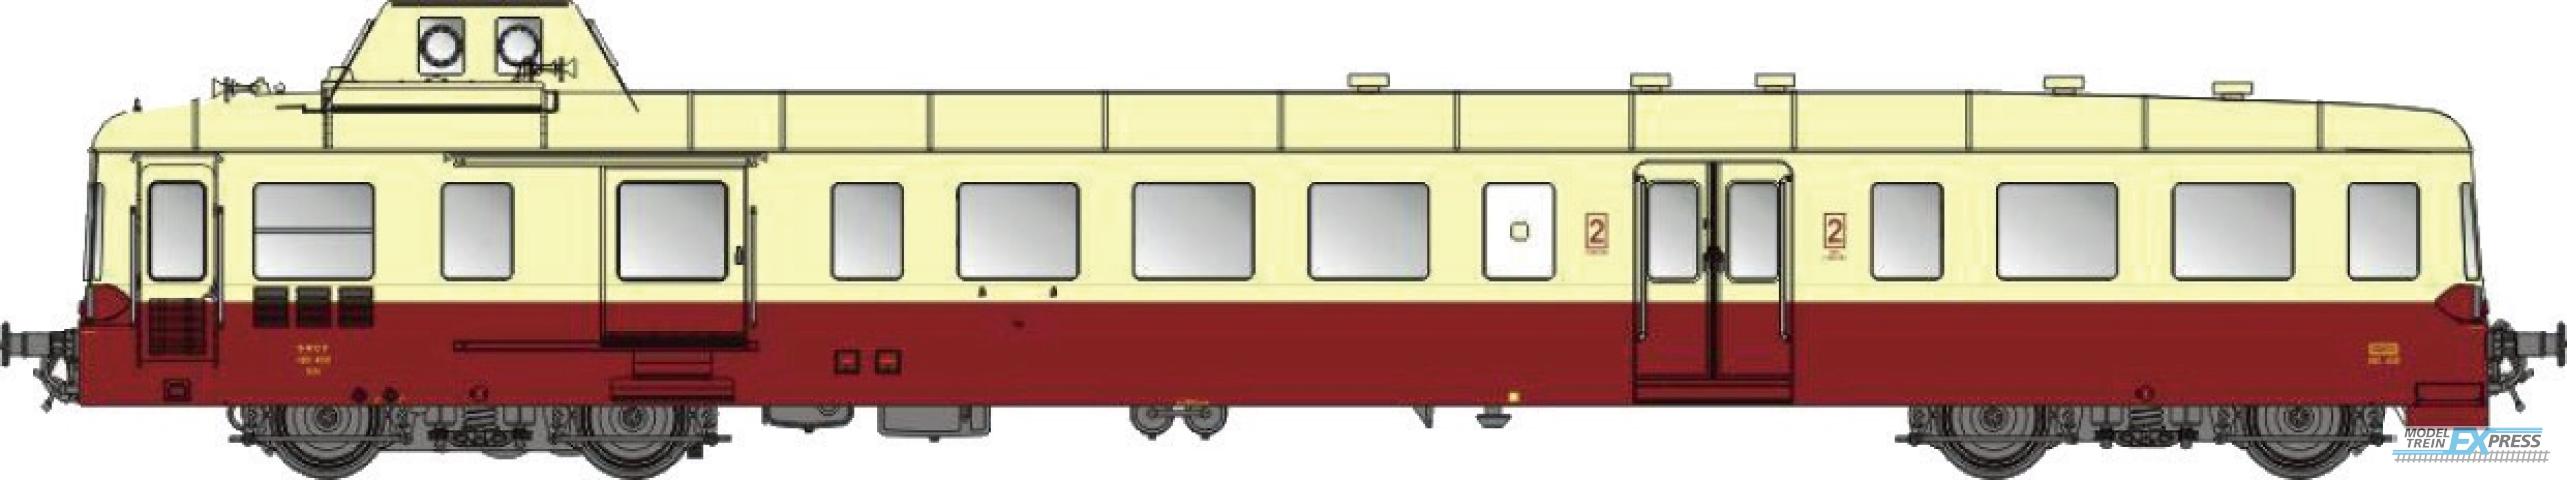 LS Models 10139 X 38XX, rood/creme, 2e klass, Bordeaux  /  Ep. IV  /  SNCF  /  HO  /  DC  /  1 P.